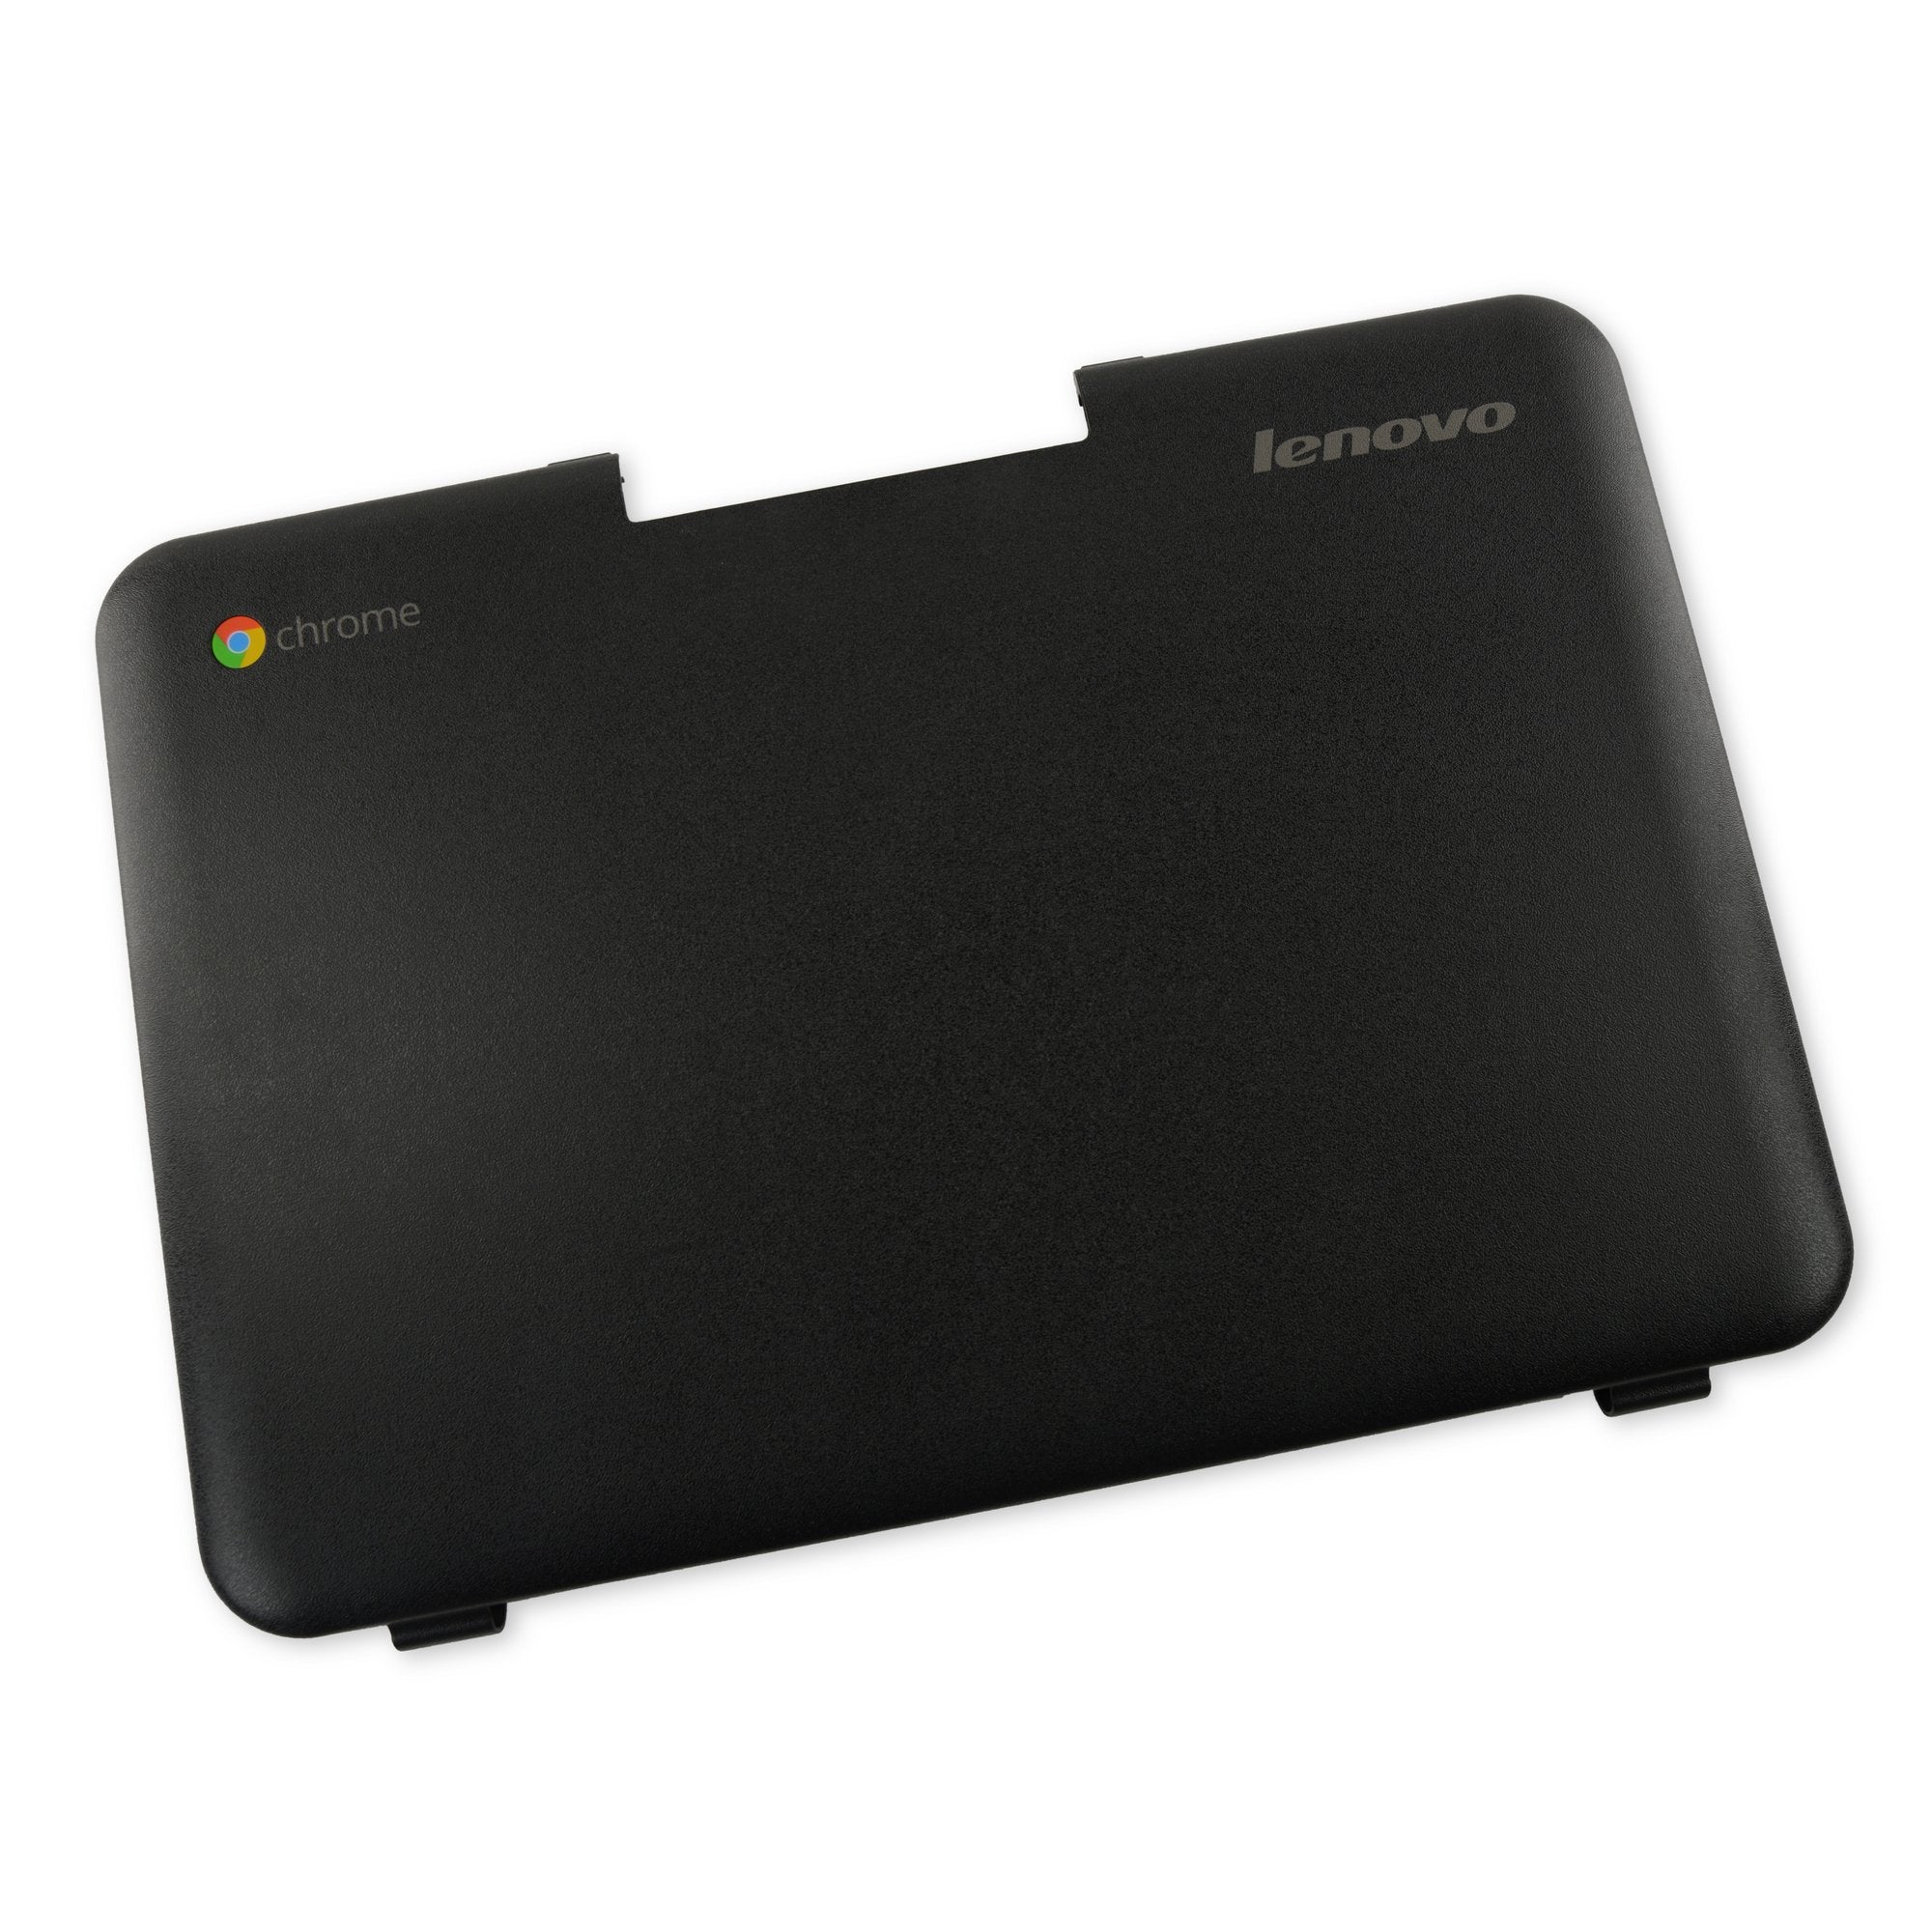 Lenovo Chromebook 11 N22 LCD Back Cover Assembly